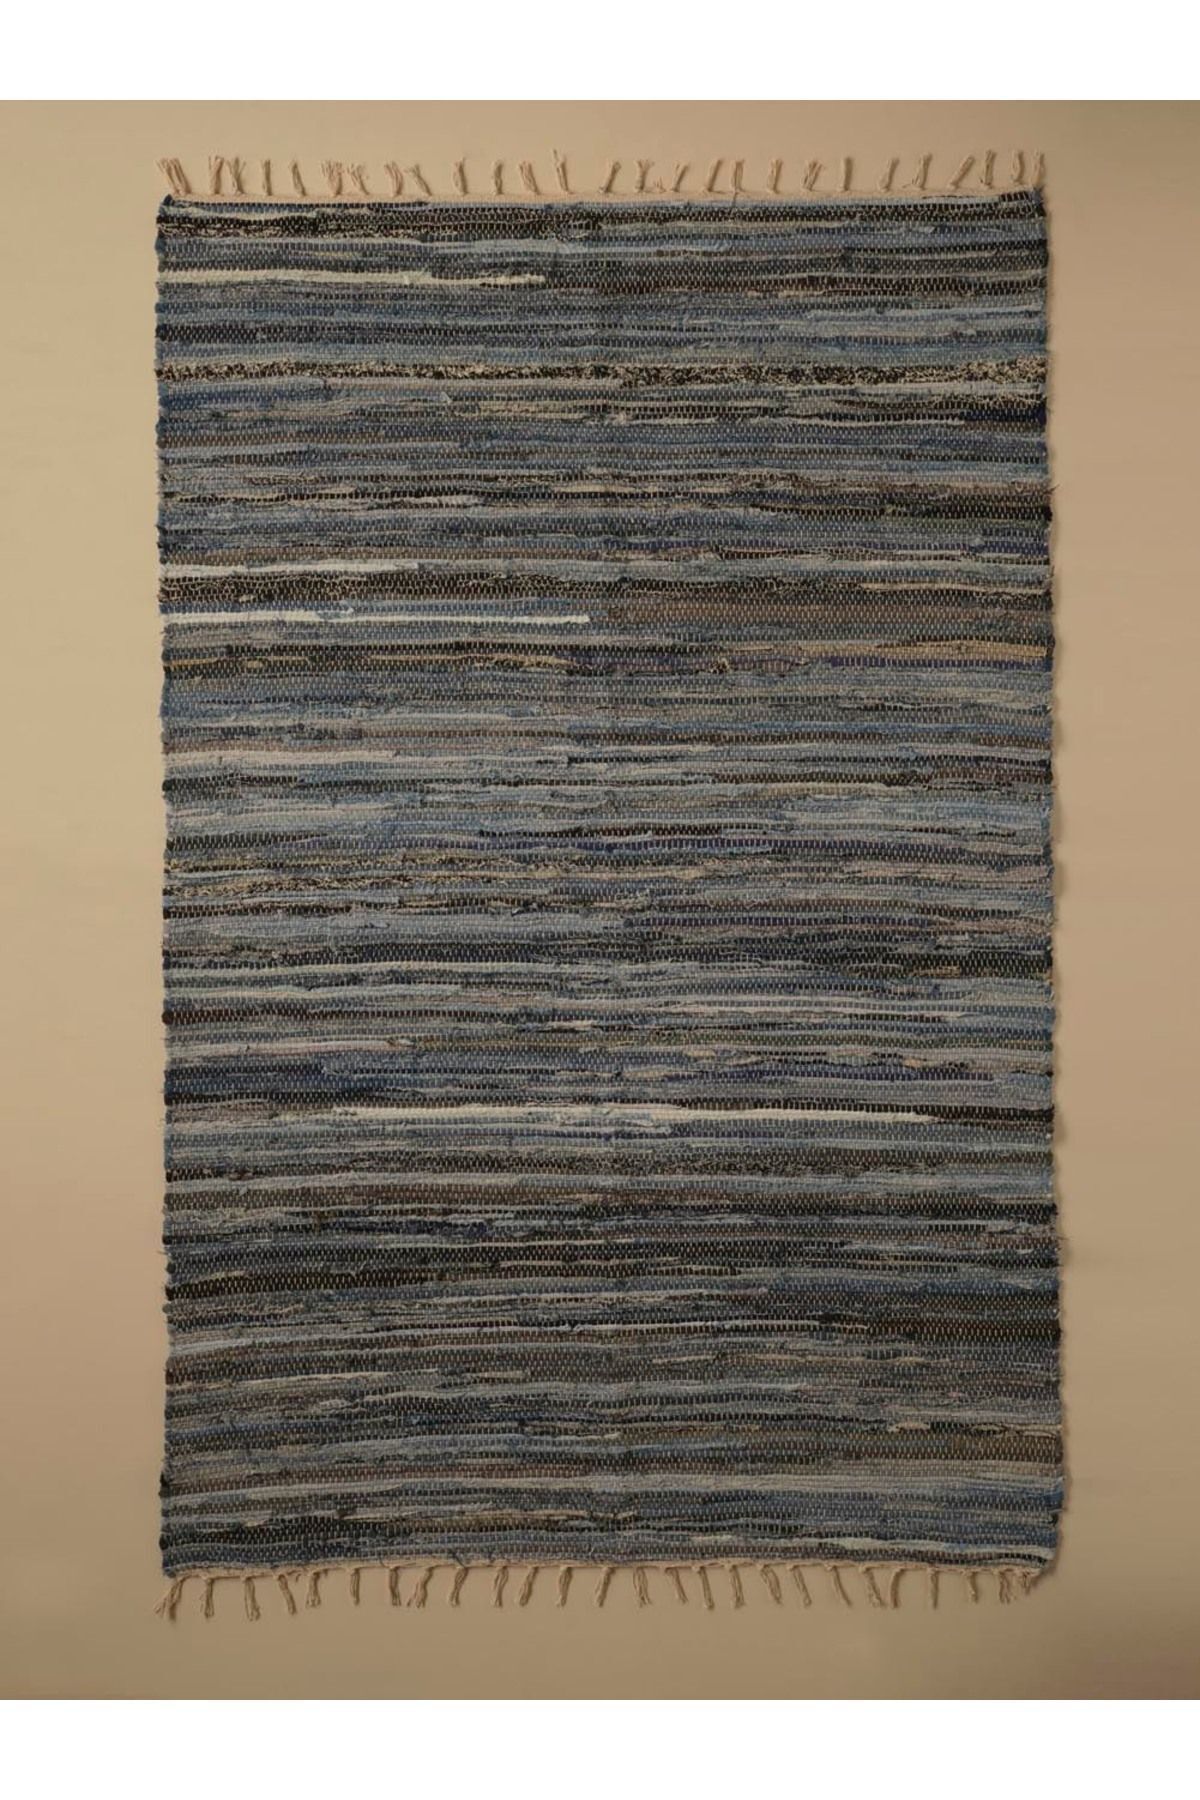 Bella Maison Denim Stripe Kilim Mavi (60x90 cm) 2002KILM0120